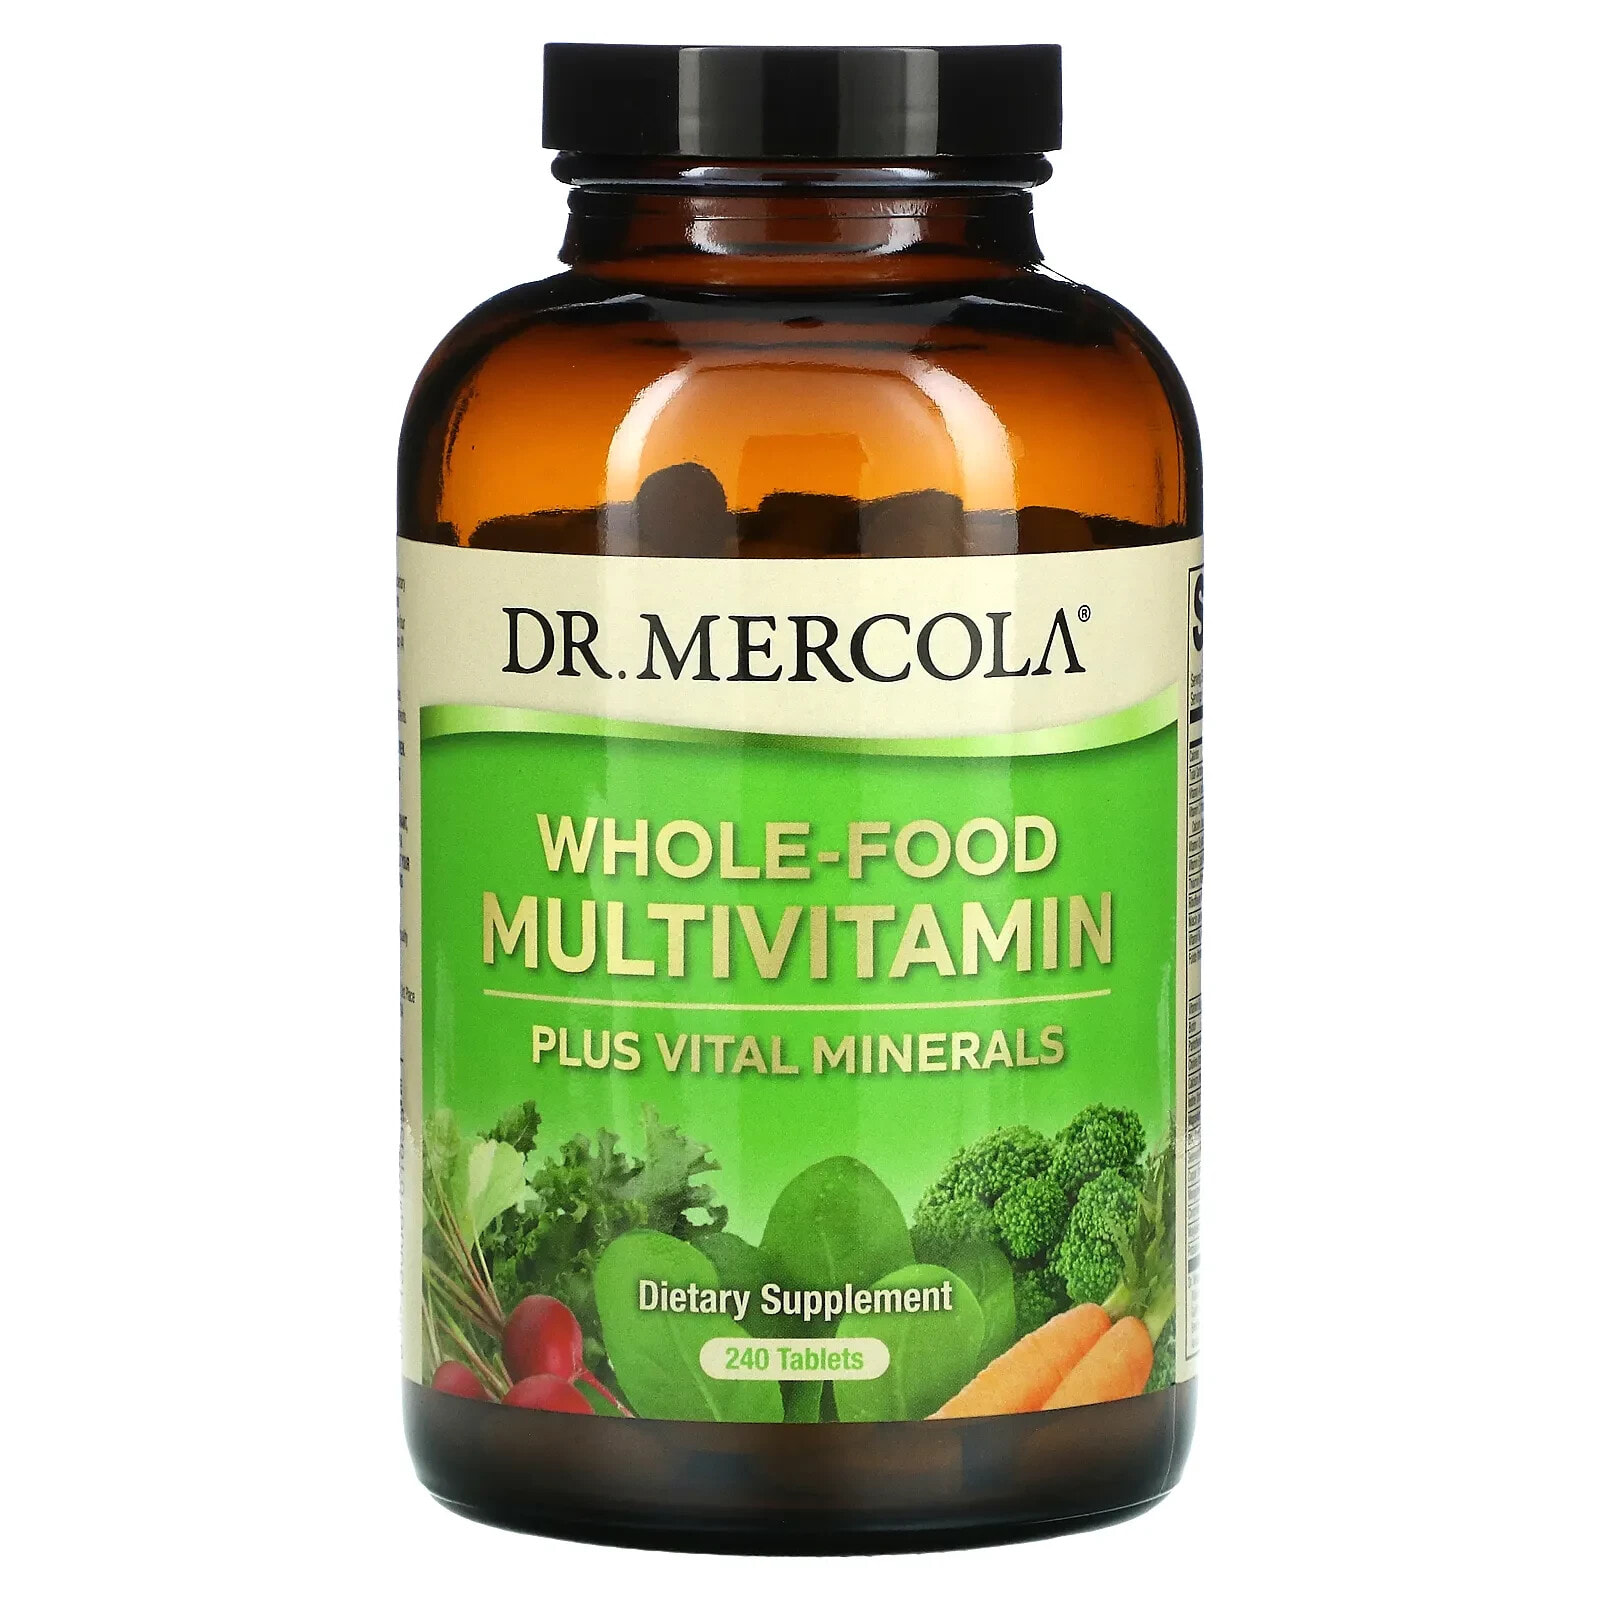 ДР. Меркола, цельнопищевые мультивитамины и жизненно важные минералы, 240 таблеток